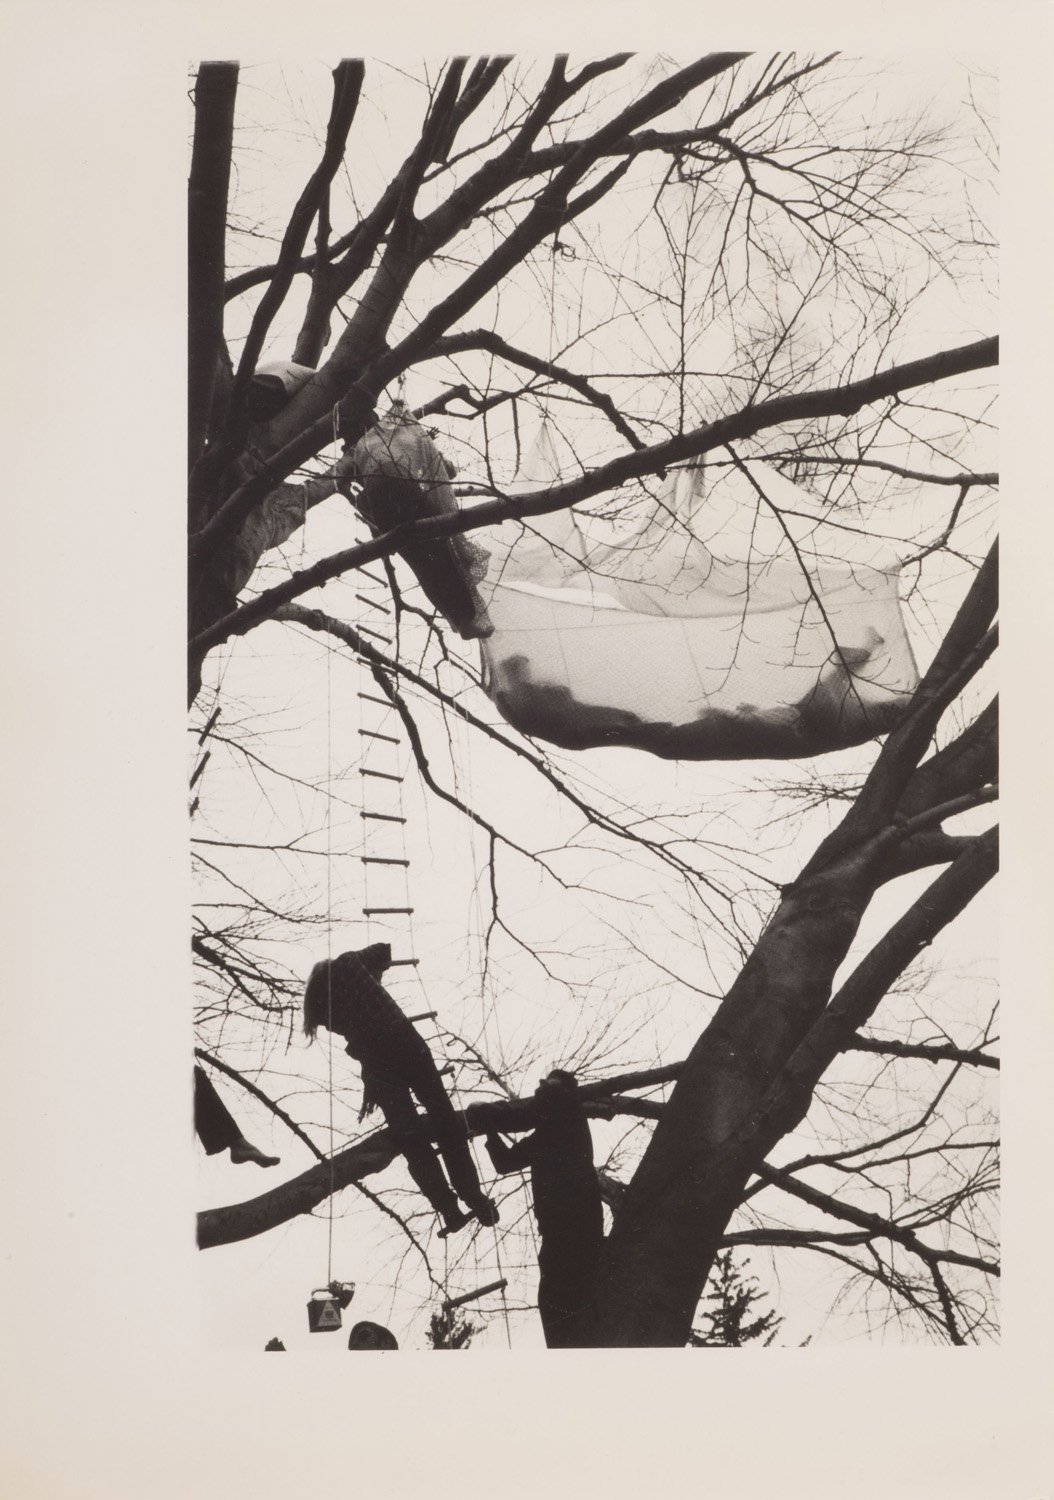 Gordon Matta-Clark, Tree Dance, Untitled, 1971, 5 fotografie vintage in bianco e nero stampate su carta ai sali d’argento. Courtesy Harold Berg